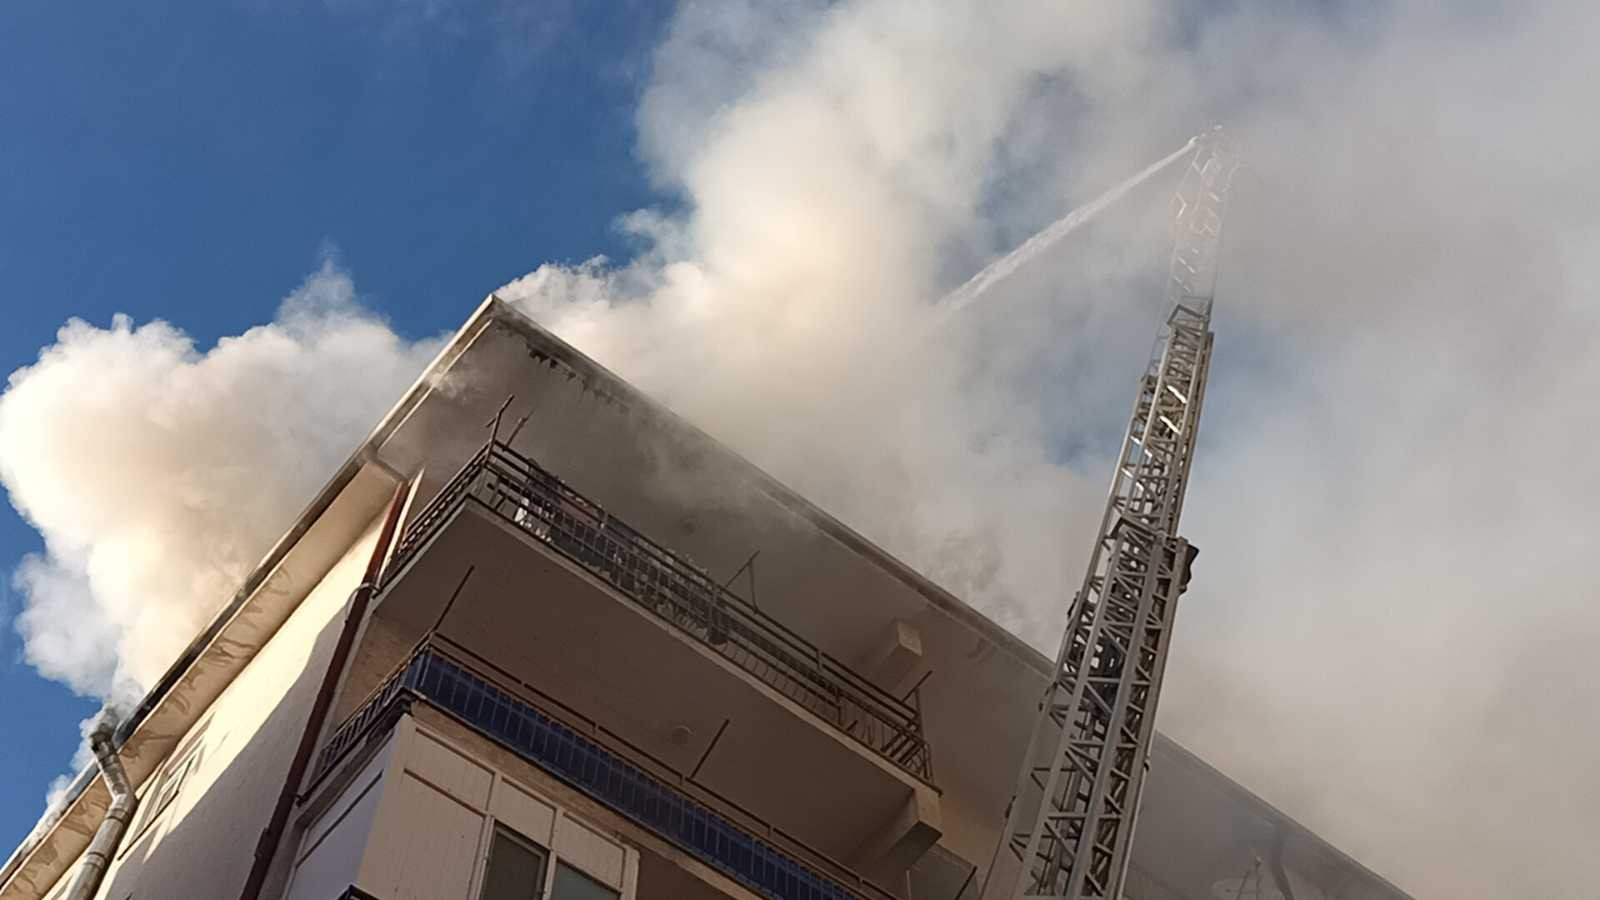 Kırşehir’de araç ve çatı yangınını itfaiye söndürdü #kirsehir